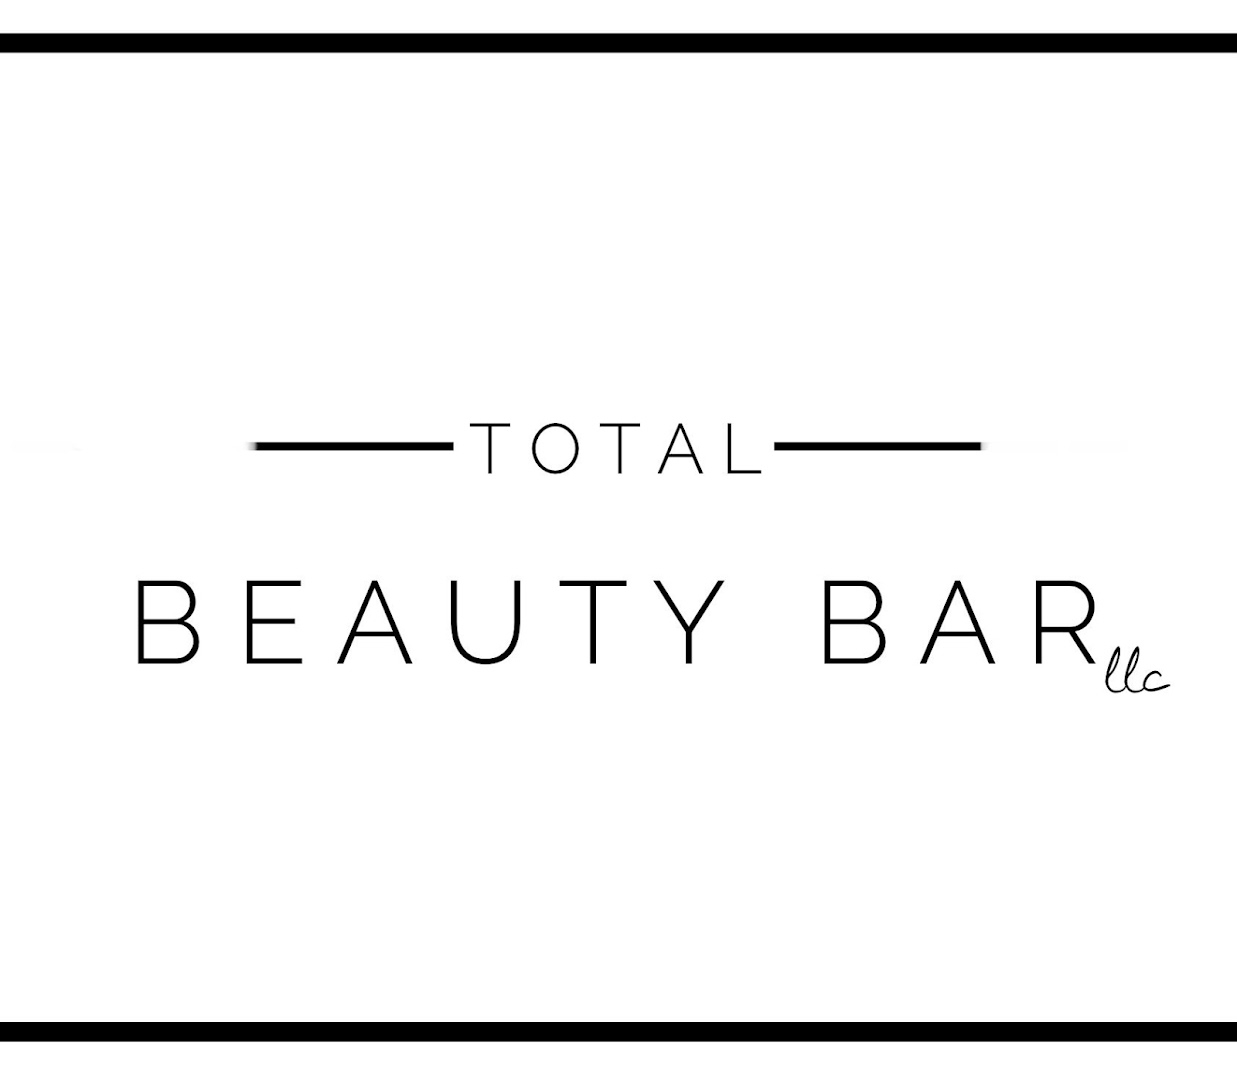 Total Beauty Bar LLC